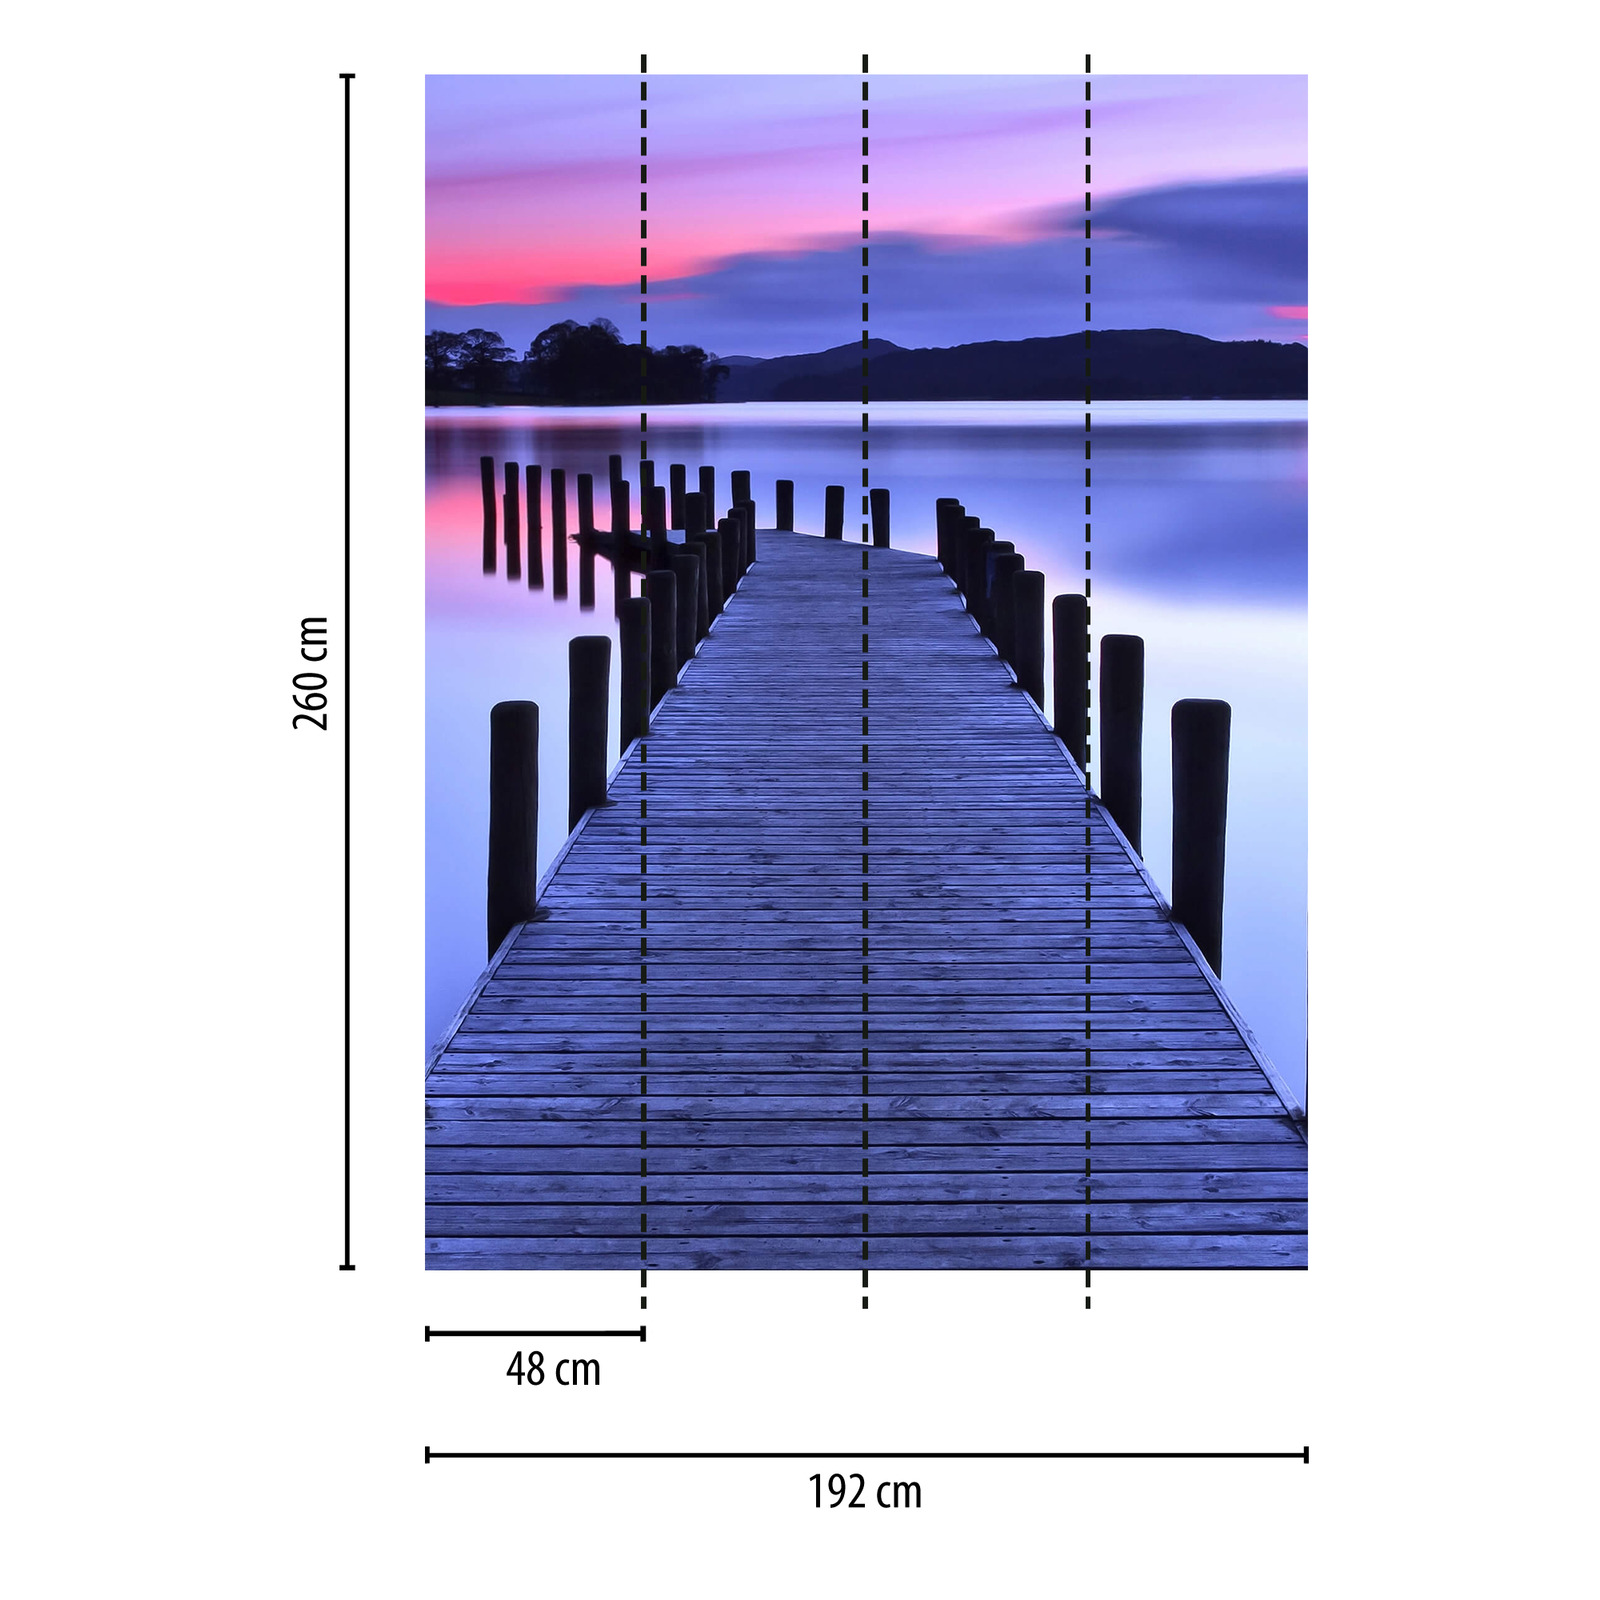             Carta da parati stretta con ponte sul lago - viola, rosa
        